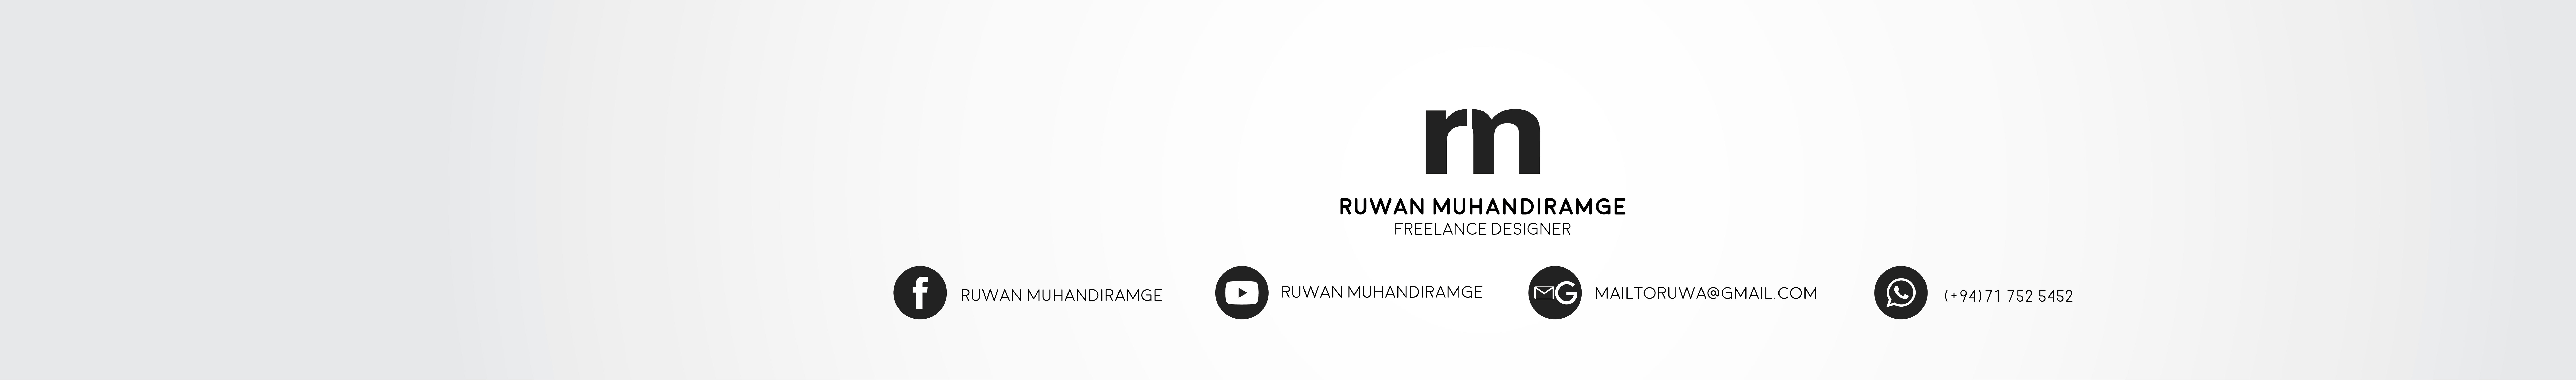 Ruwan Muhandiramge's profile banner